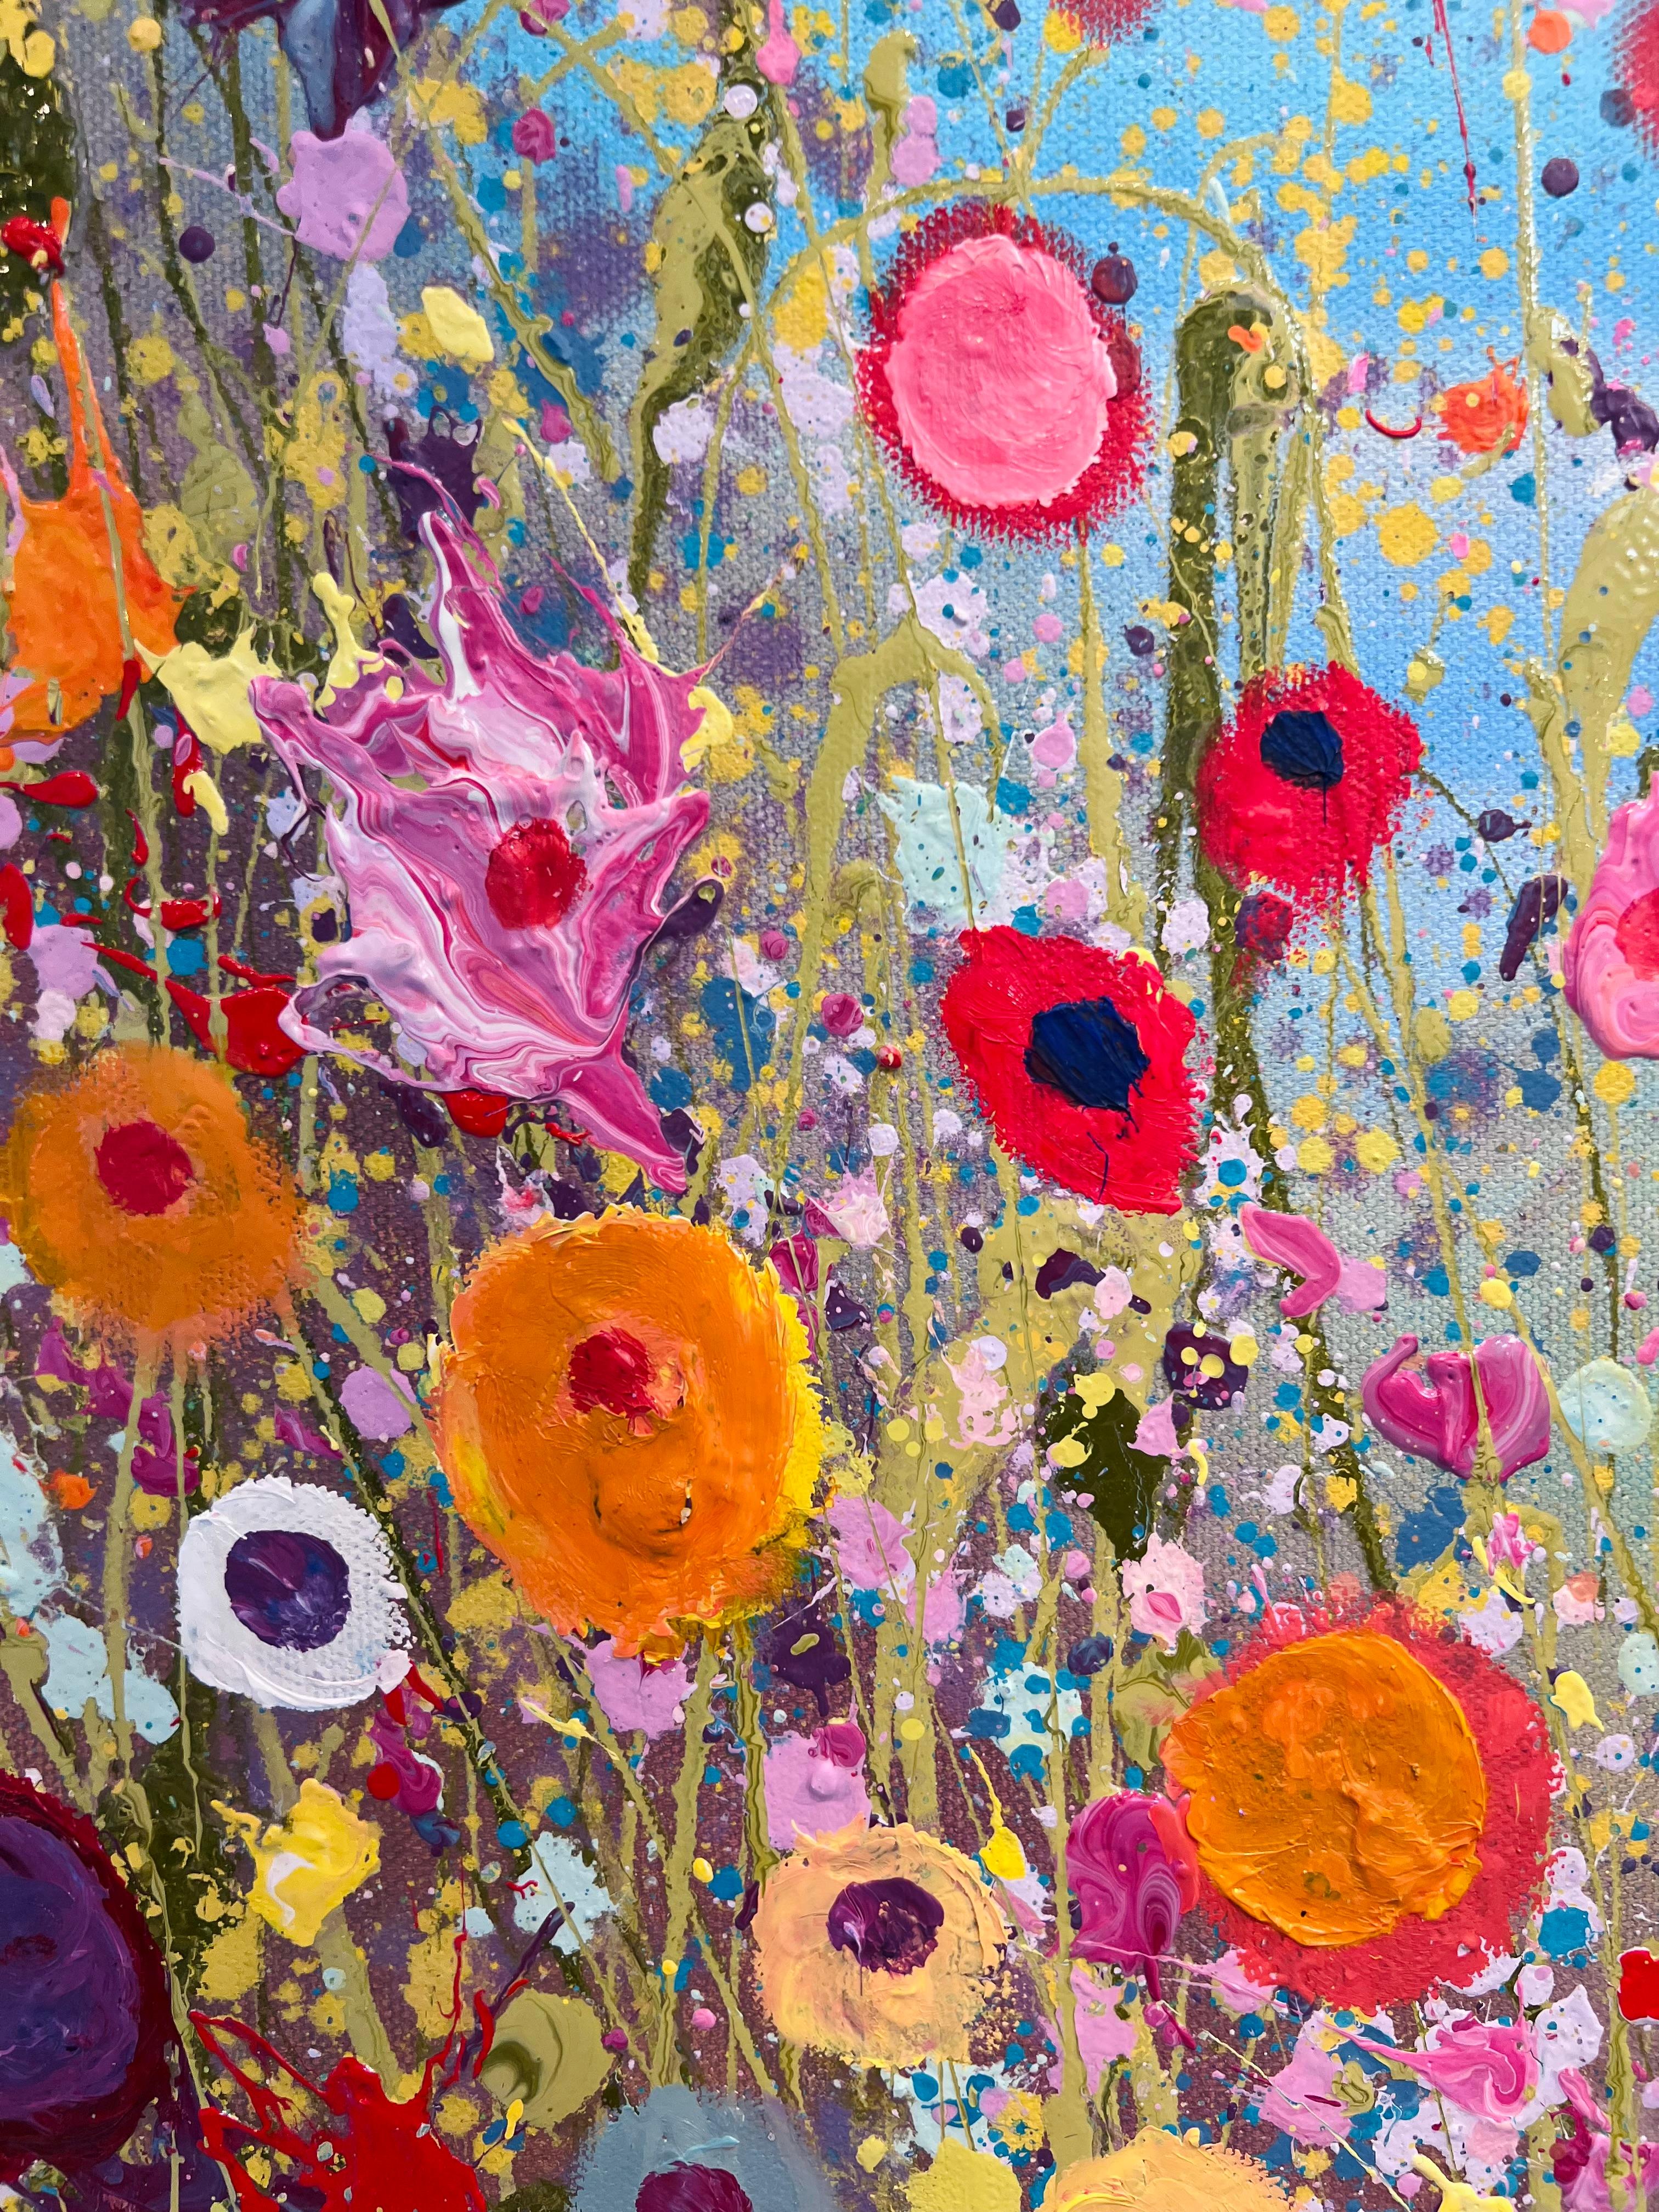 Les sirènes chantent Sweet Love Songs - original floral moderne, peinture à l'huile - Naturalisme Painting par Yvonne Coomber